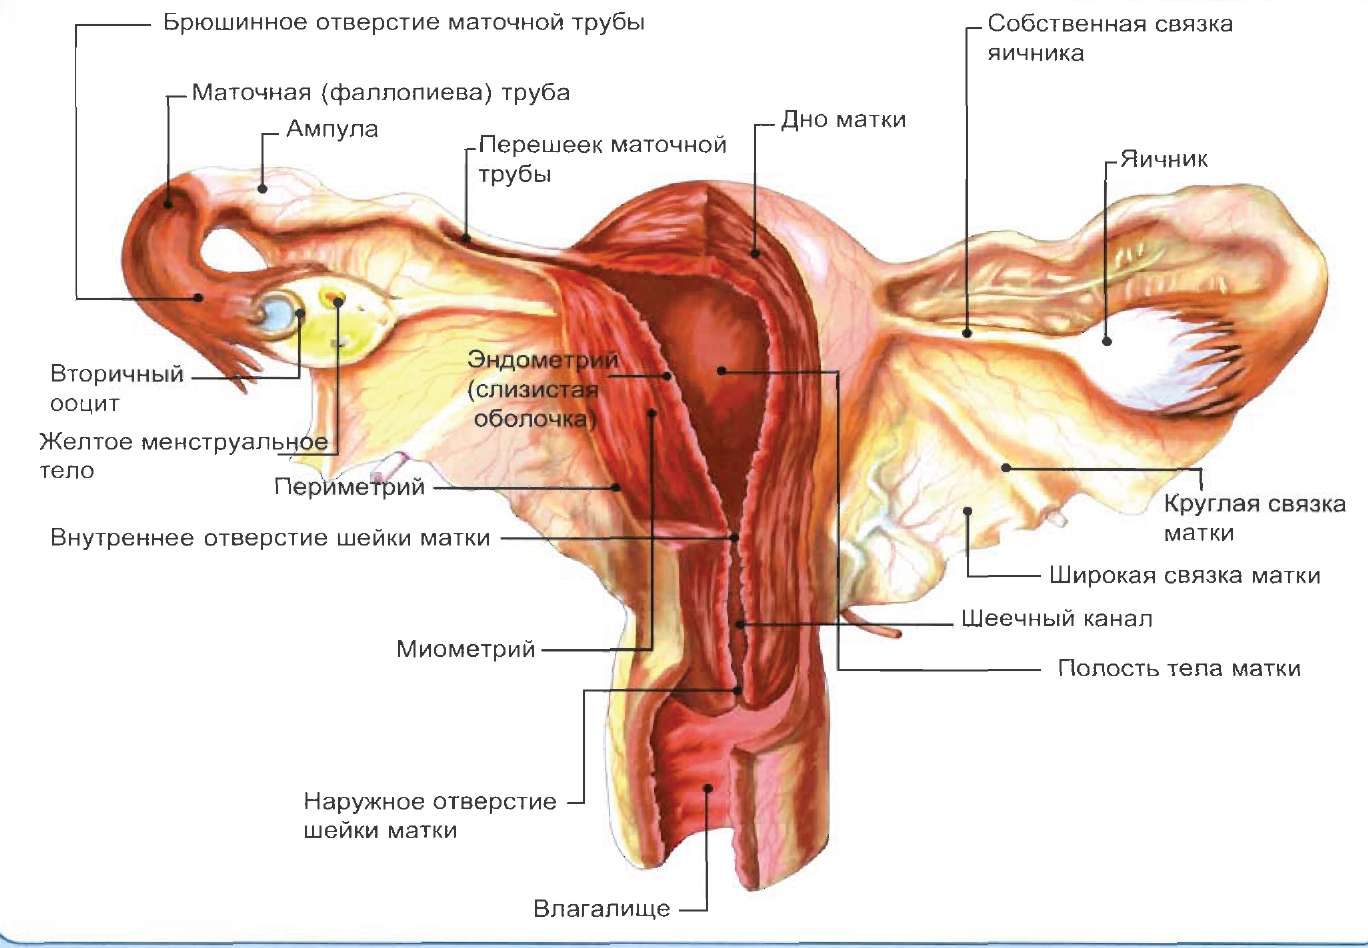 Женские половые органы яичник. Строение матки с придатками. Внутреннее Анатомическое отверстие матки. Маточная труба внутреннее строение. Строение матки и придатков анатомия.